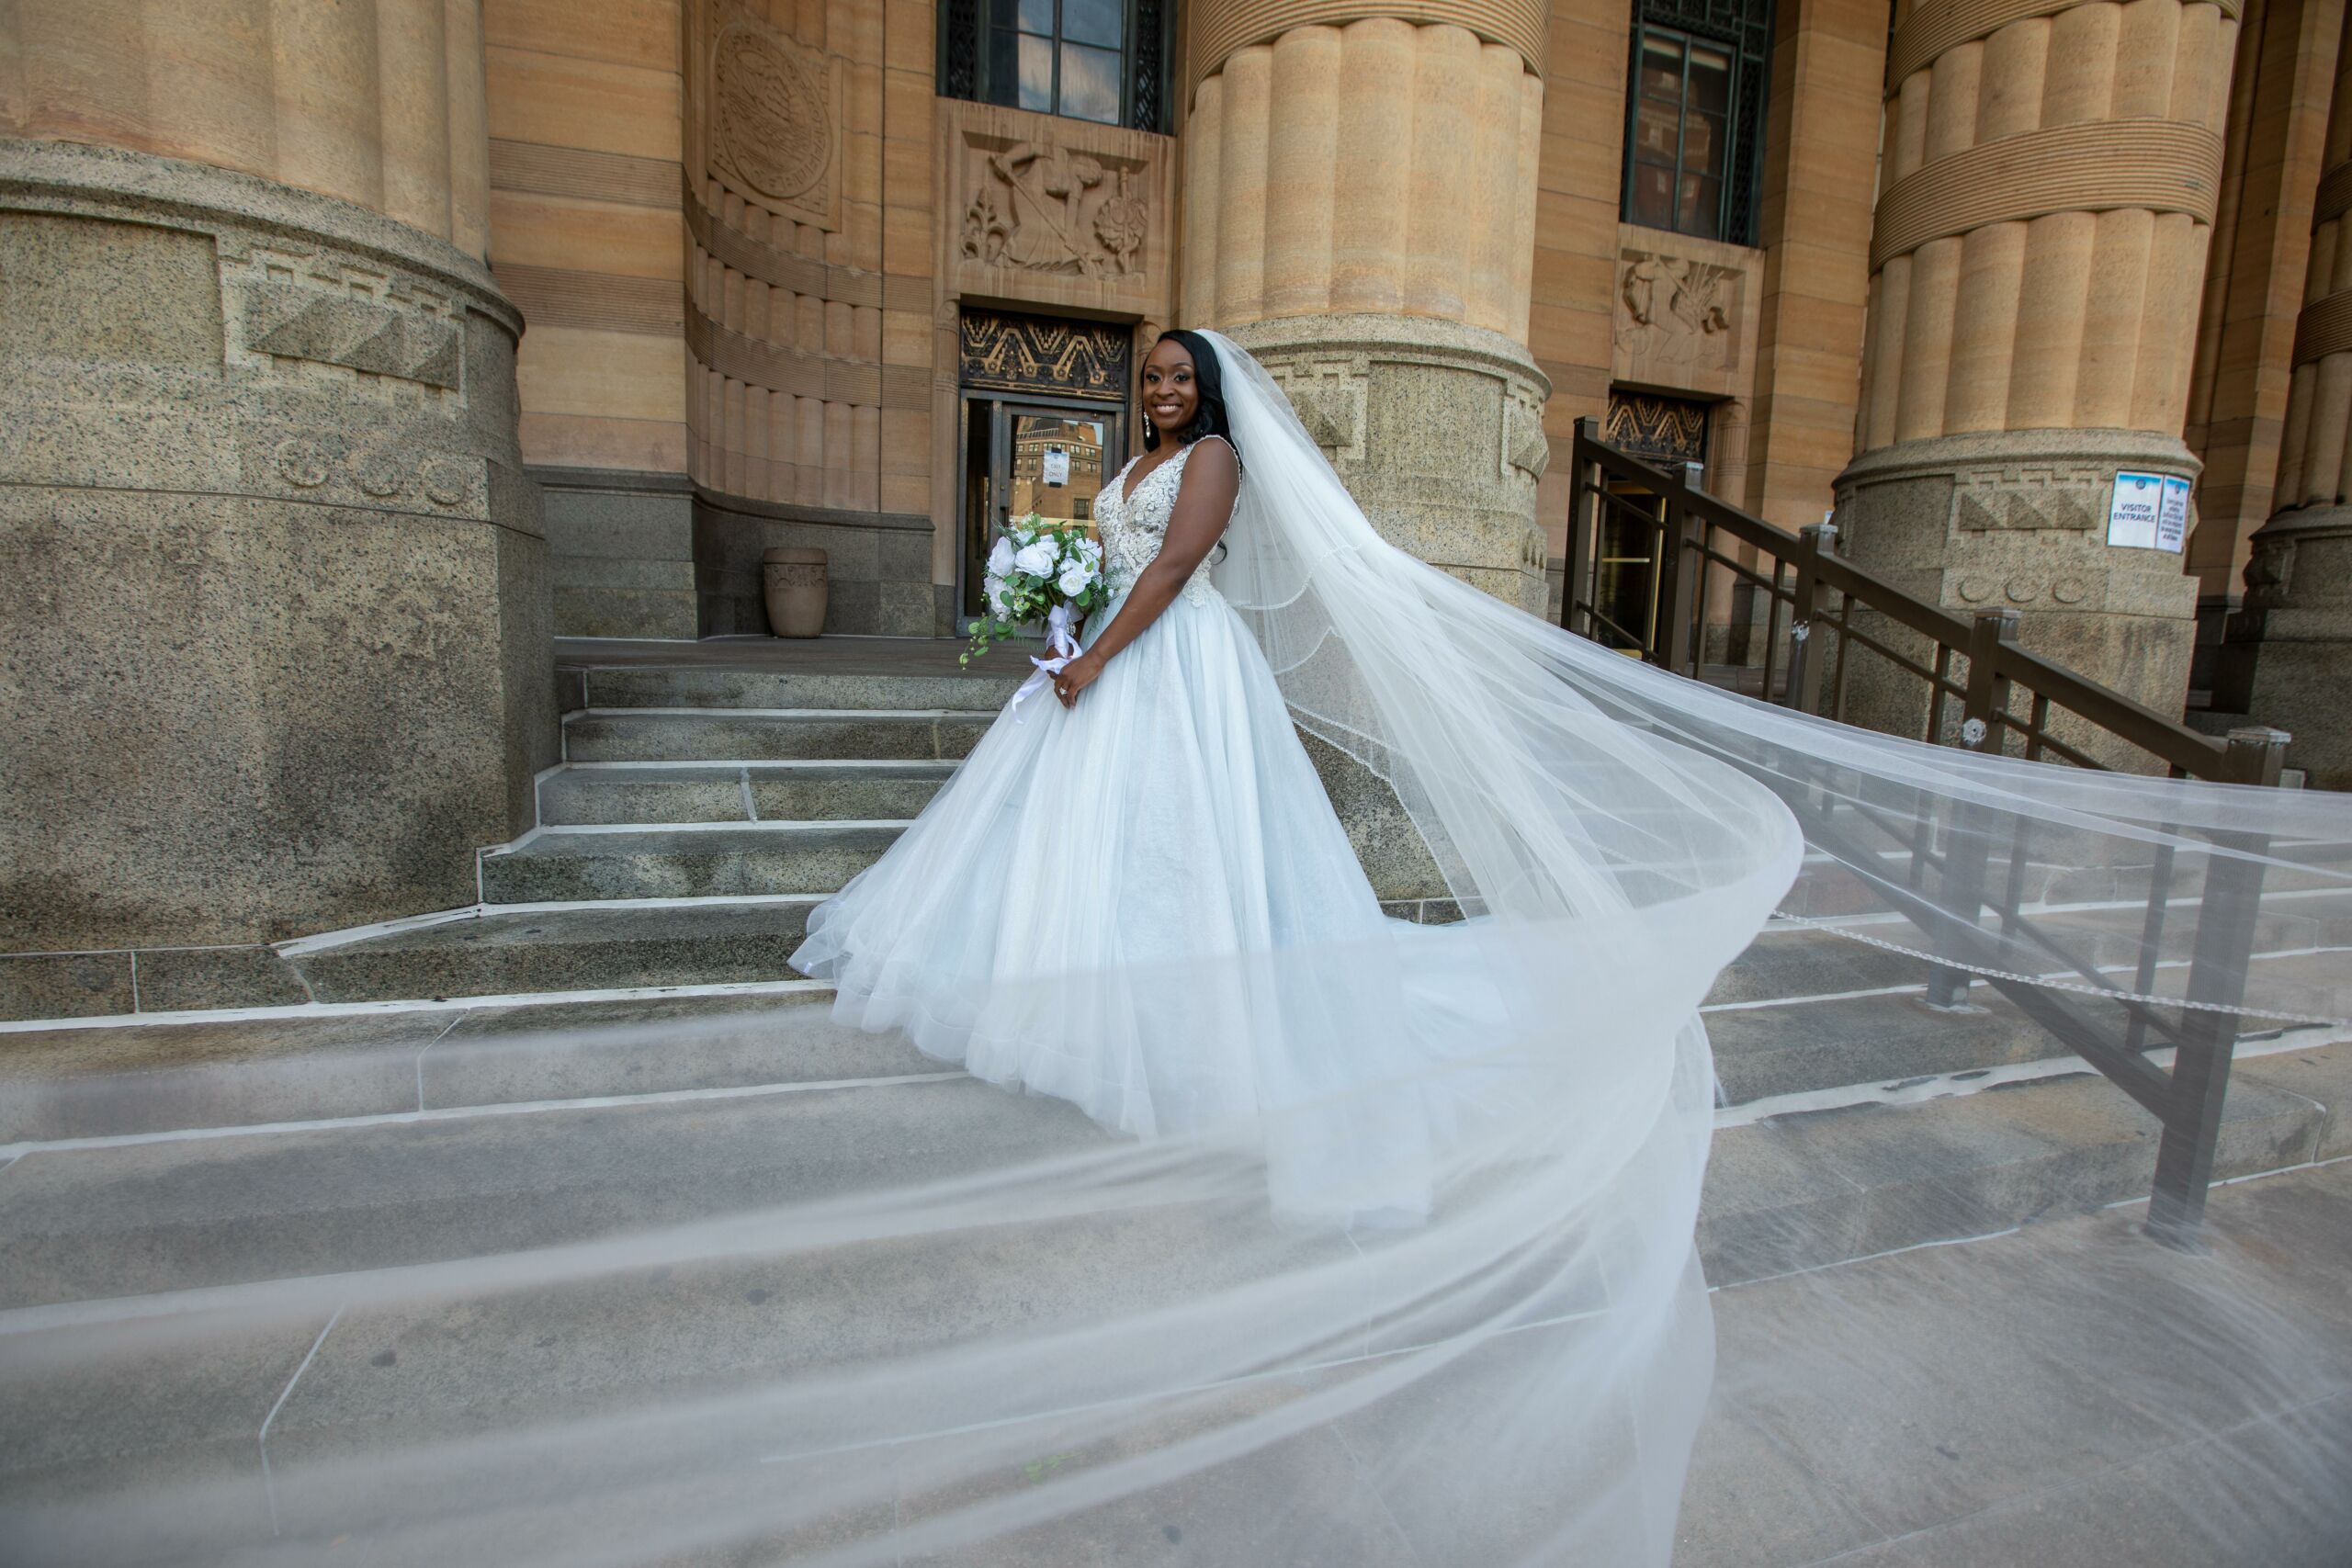 A large bridal veil